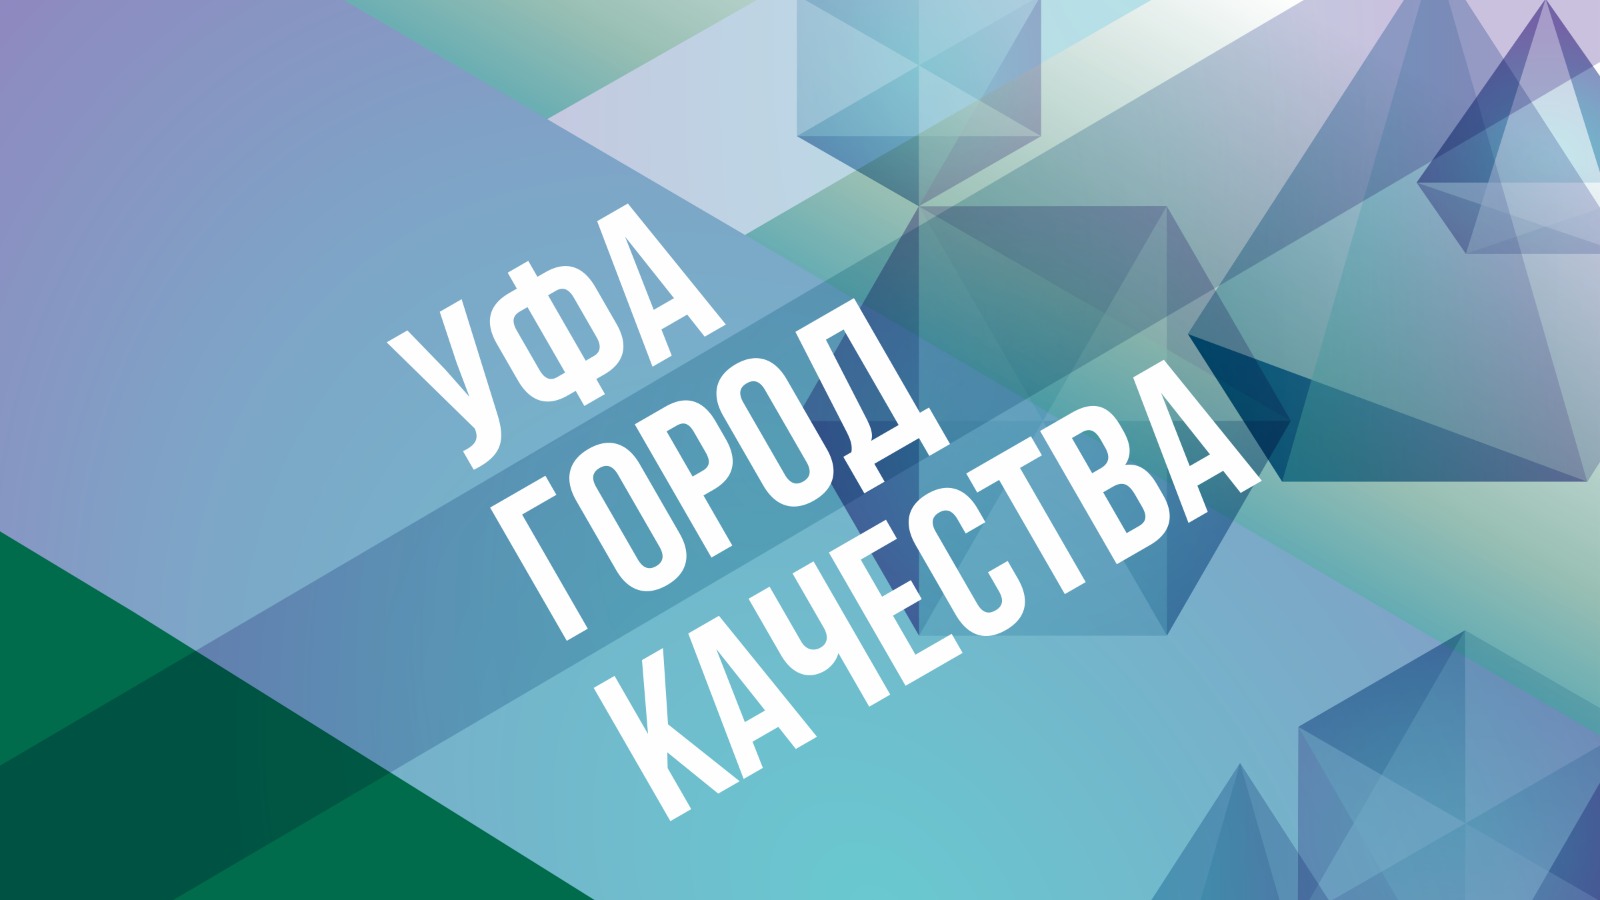 В Башкортостане в рамках Недели качества впервые пройдет акция «Уфа – город качества»